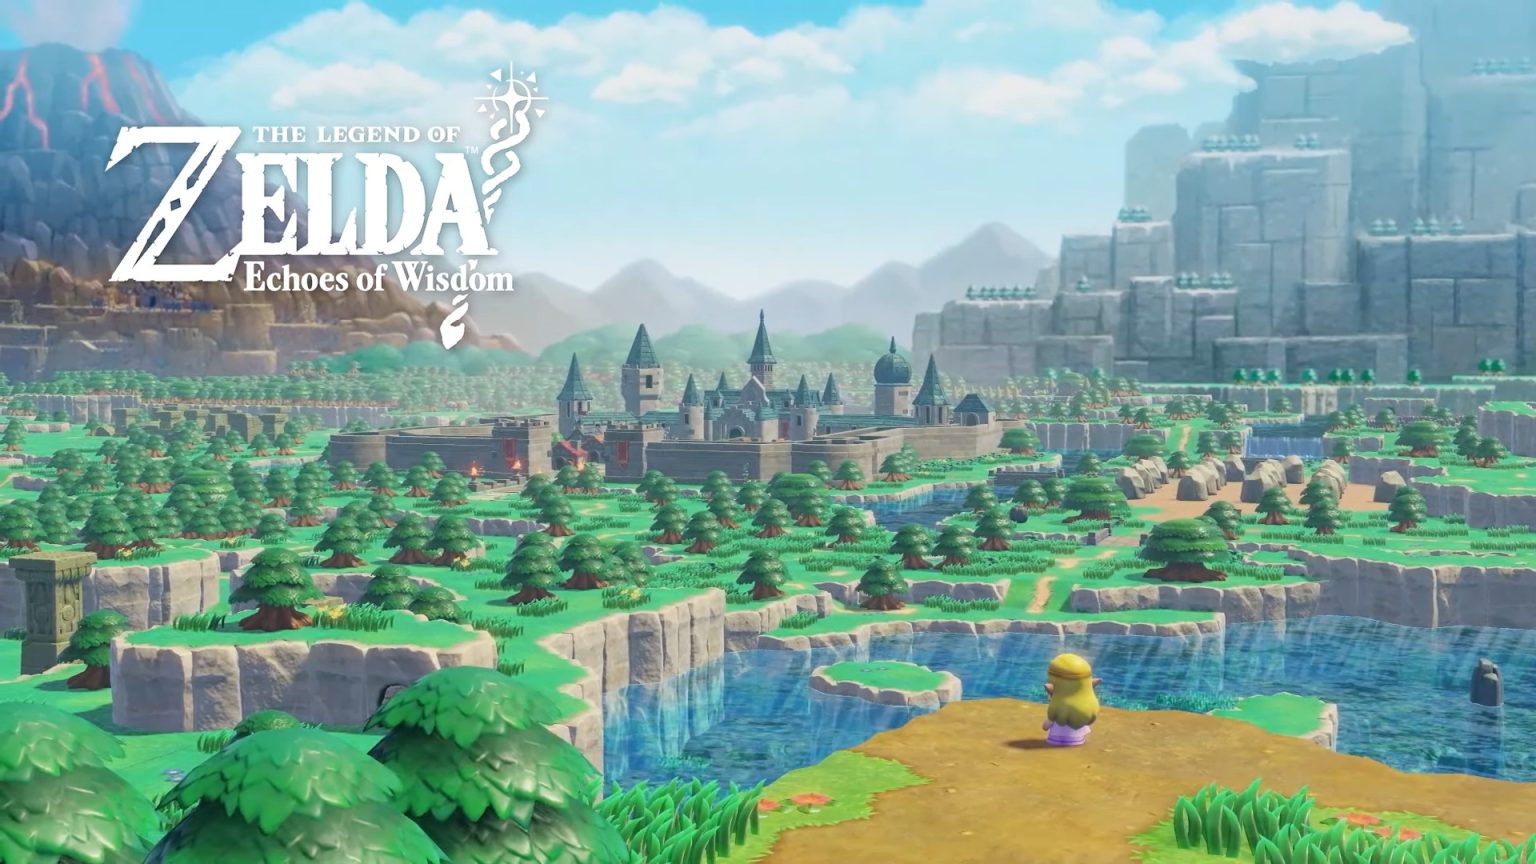 Nintendo kündigt The Legend of Zelda: Echoes of Wisdom an - Veröffentlichung am 26. September